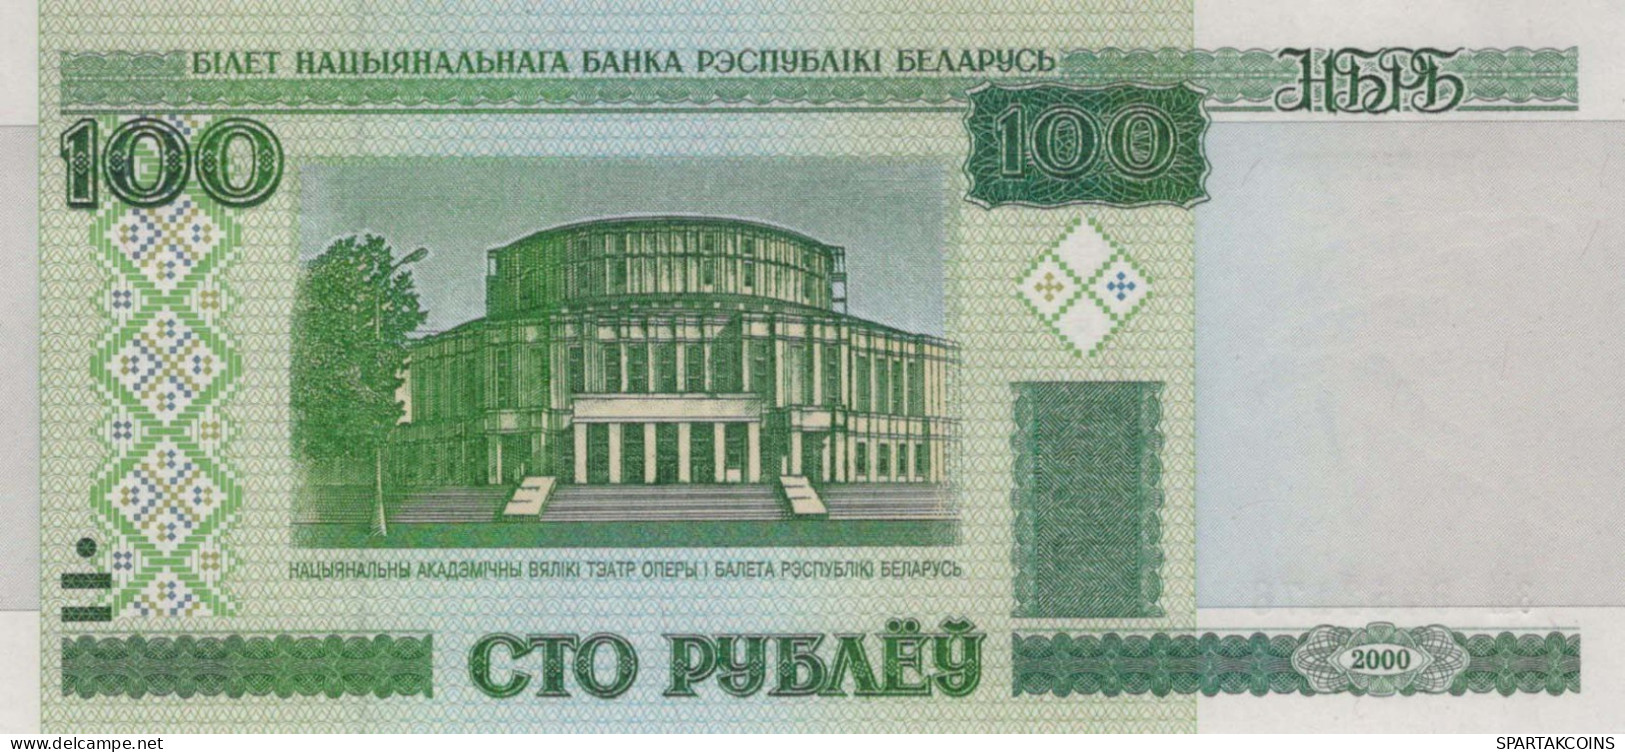 100 RUBLES 2000 BELARUS Papiergeld Banknote #PJ306 - Lokale Ausgaben